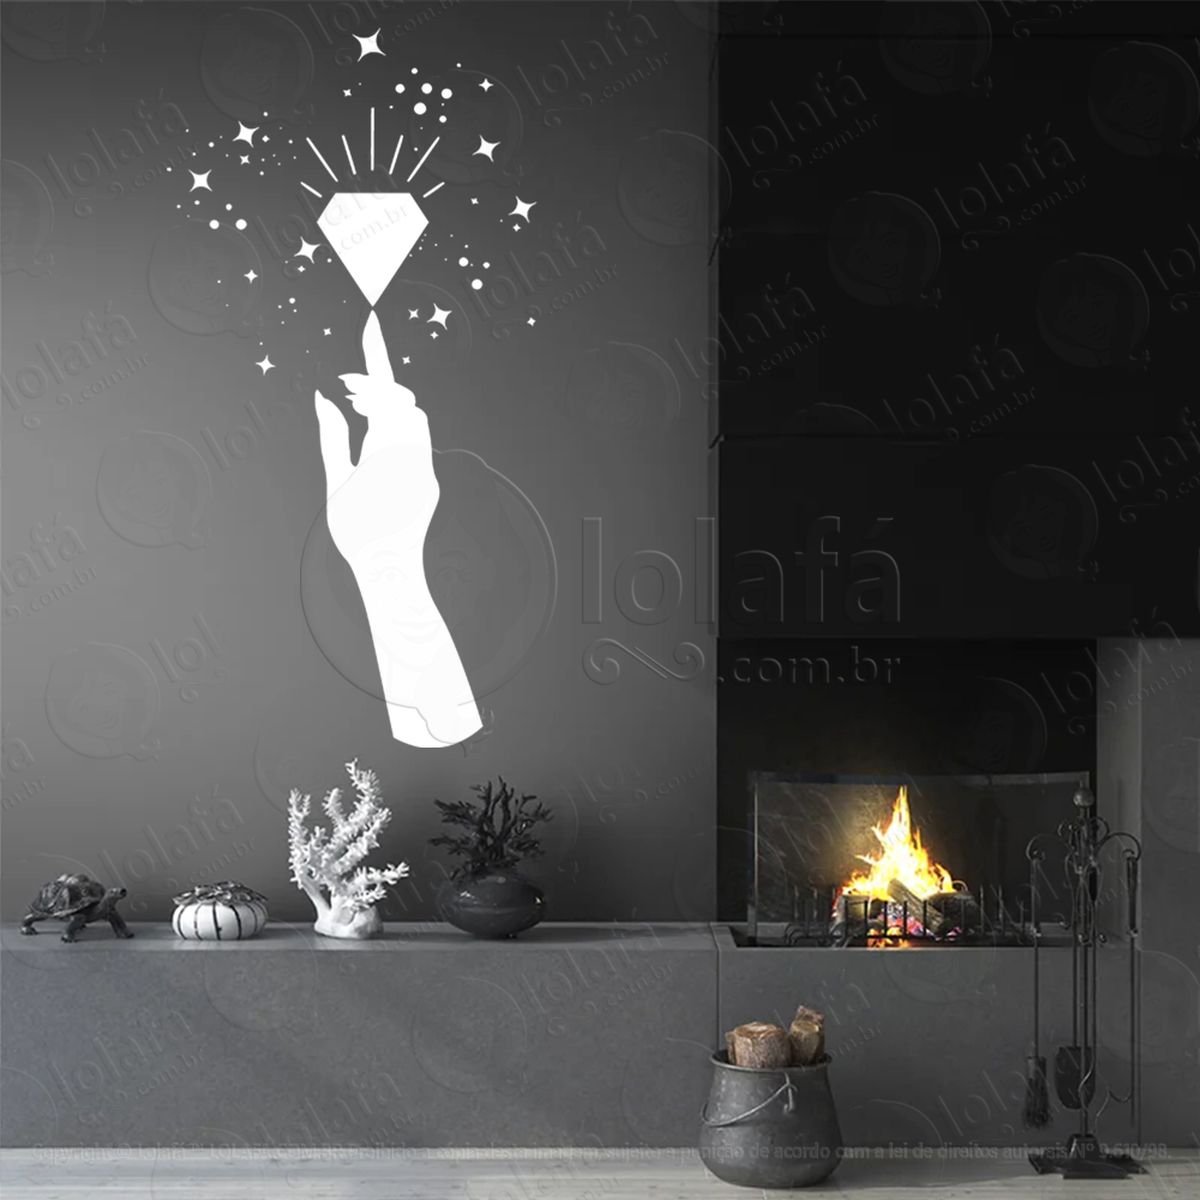 mão e cristal hand and crystal adesivo de parede decorativo para casa, sala, quarto, vidro e altar ocultista - mod:256